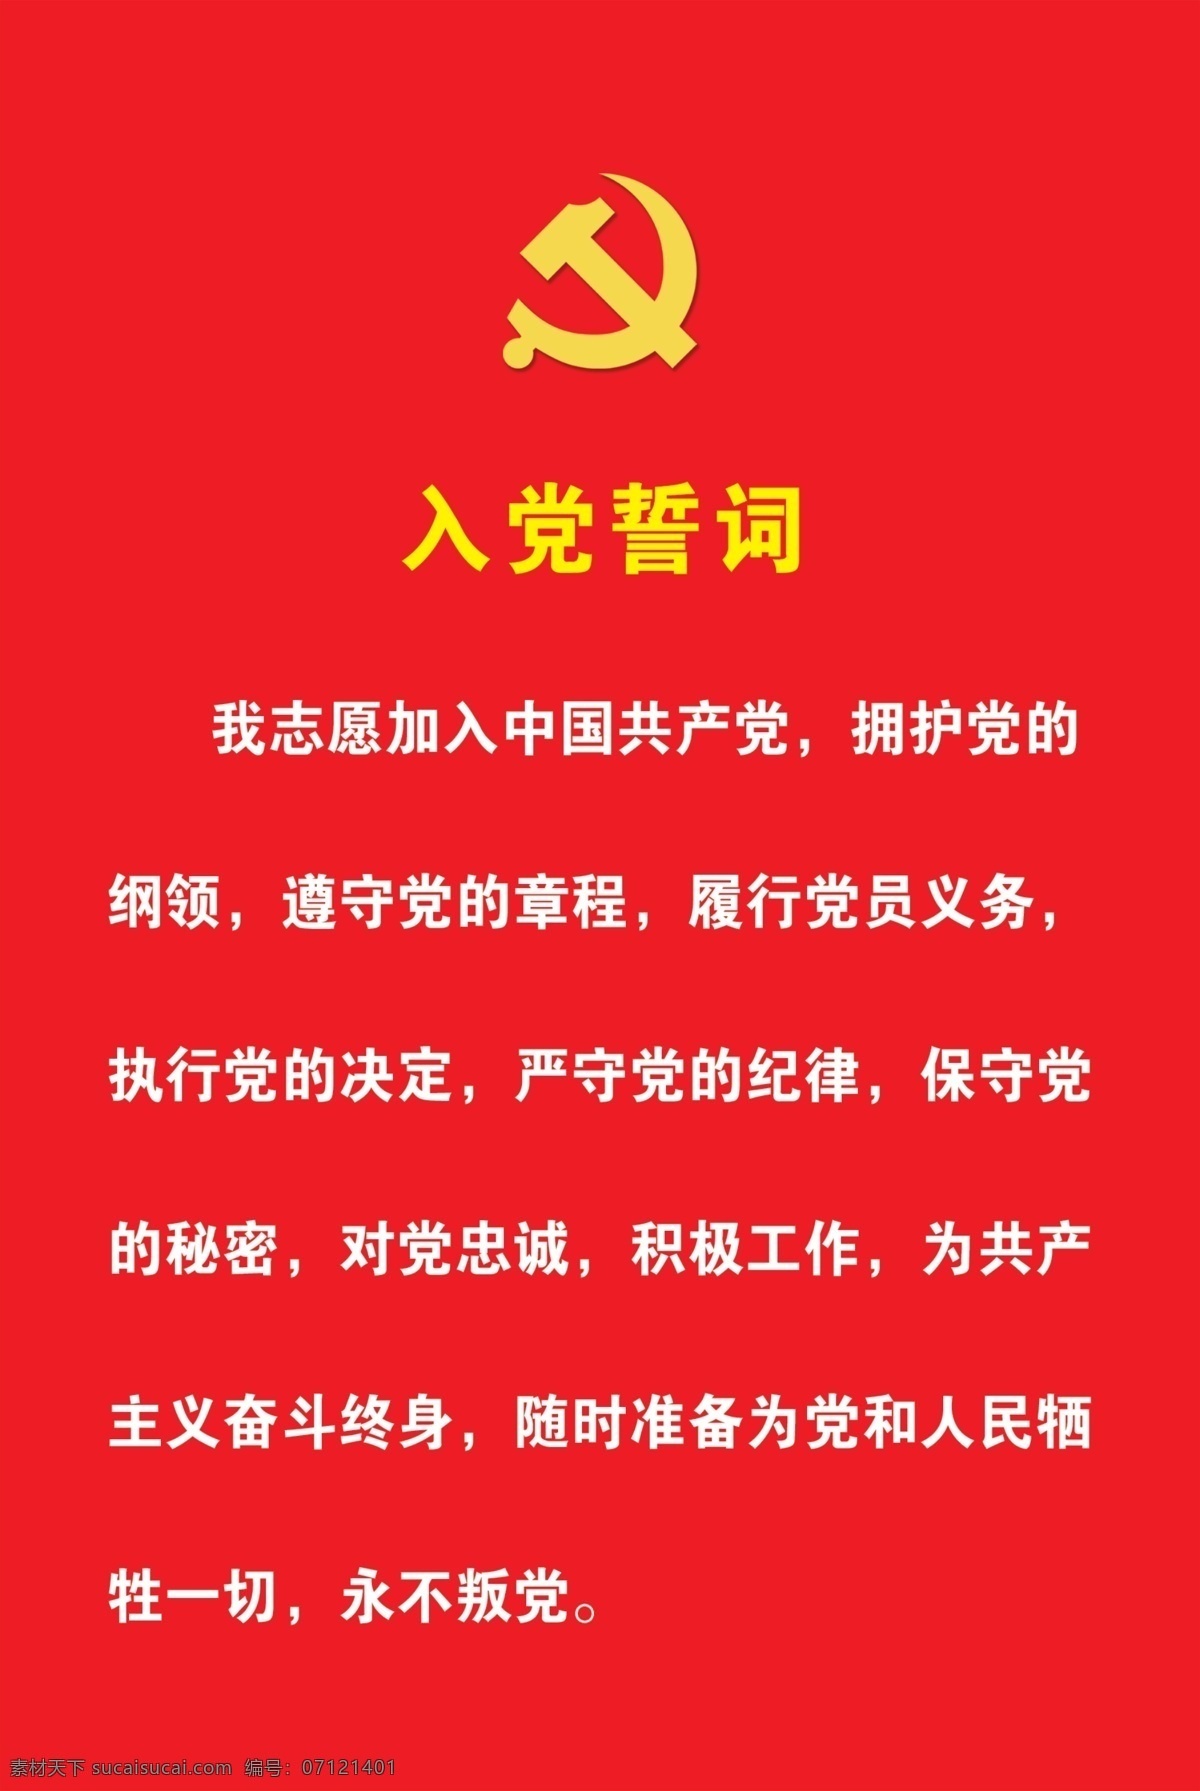 入党誓词展板 入党誓词内容 我志愿加入 中国共产党 对党忠诚